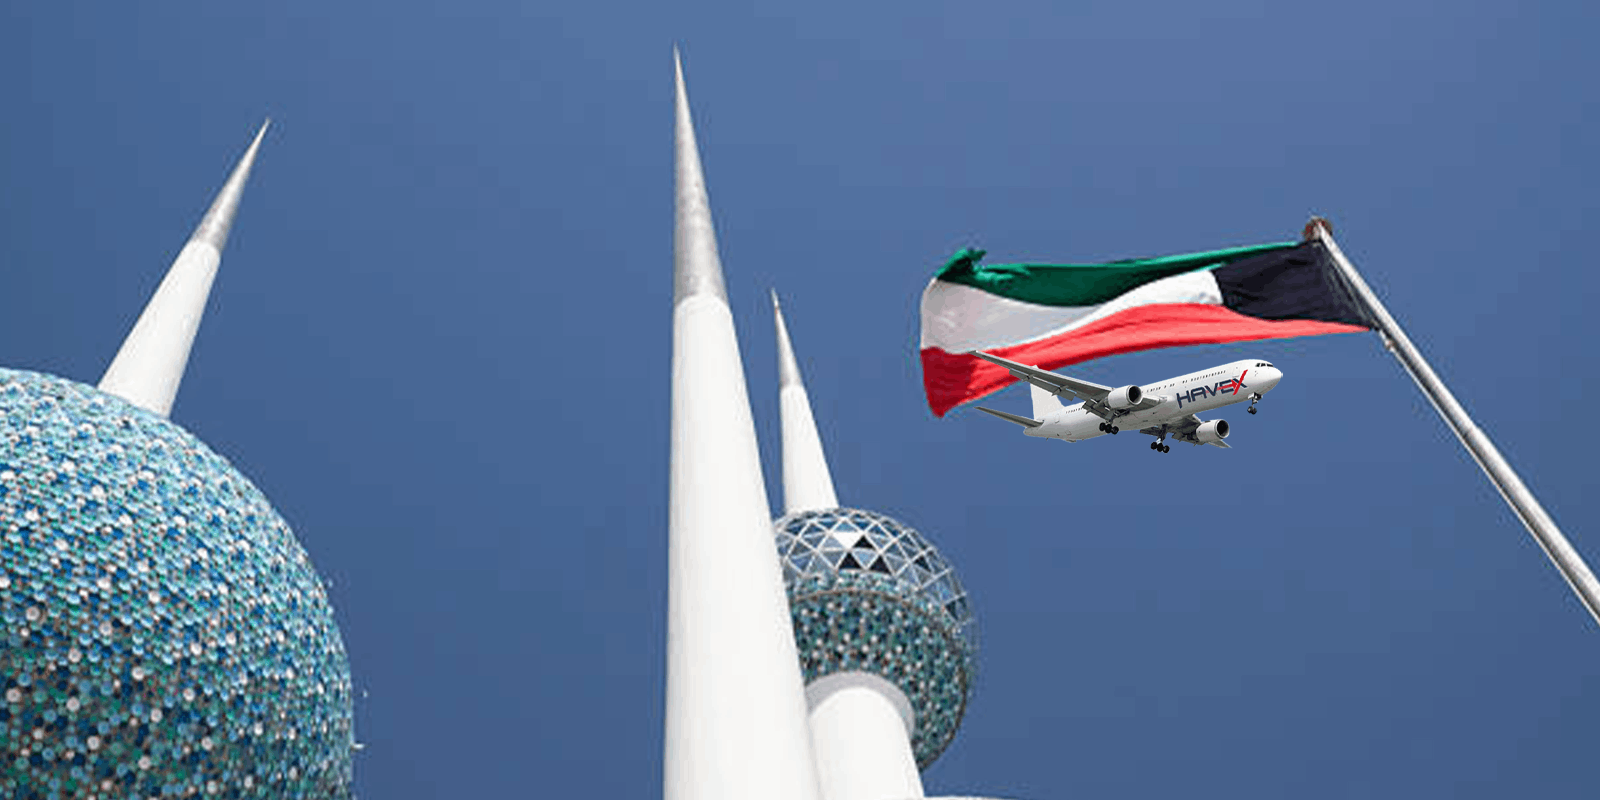 Kuweıt Kargo | Kuveyt Uçak Kargo | Kuveyt Kargo Fiyatları